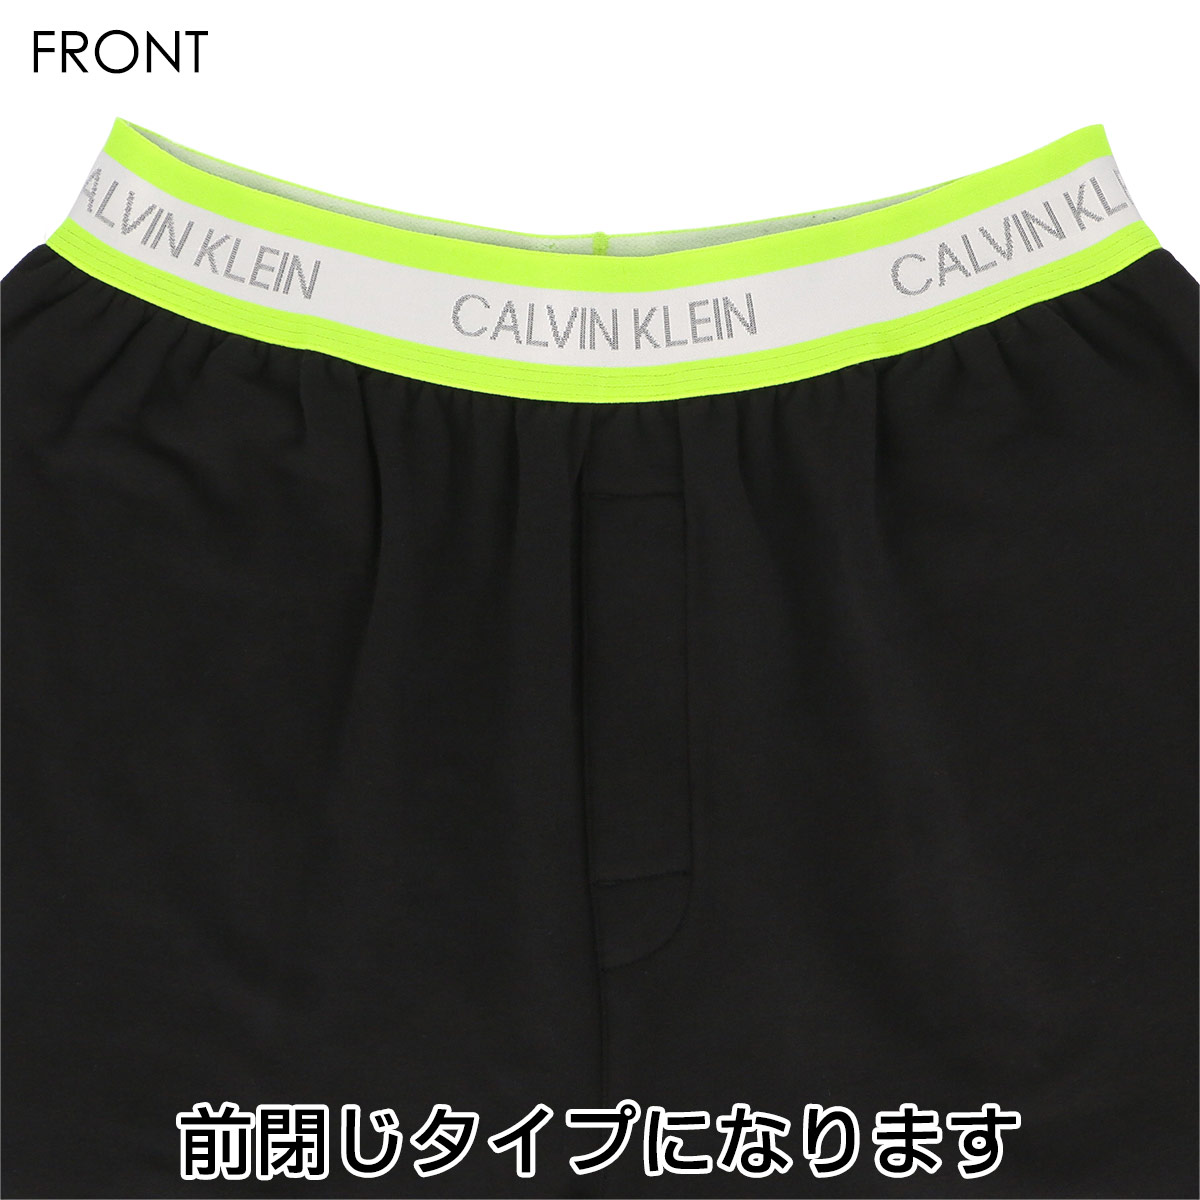 calvin klein neon underwear